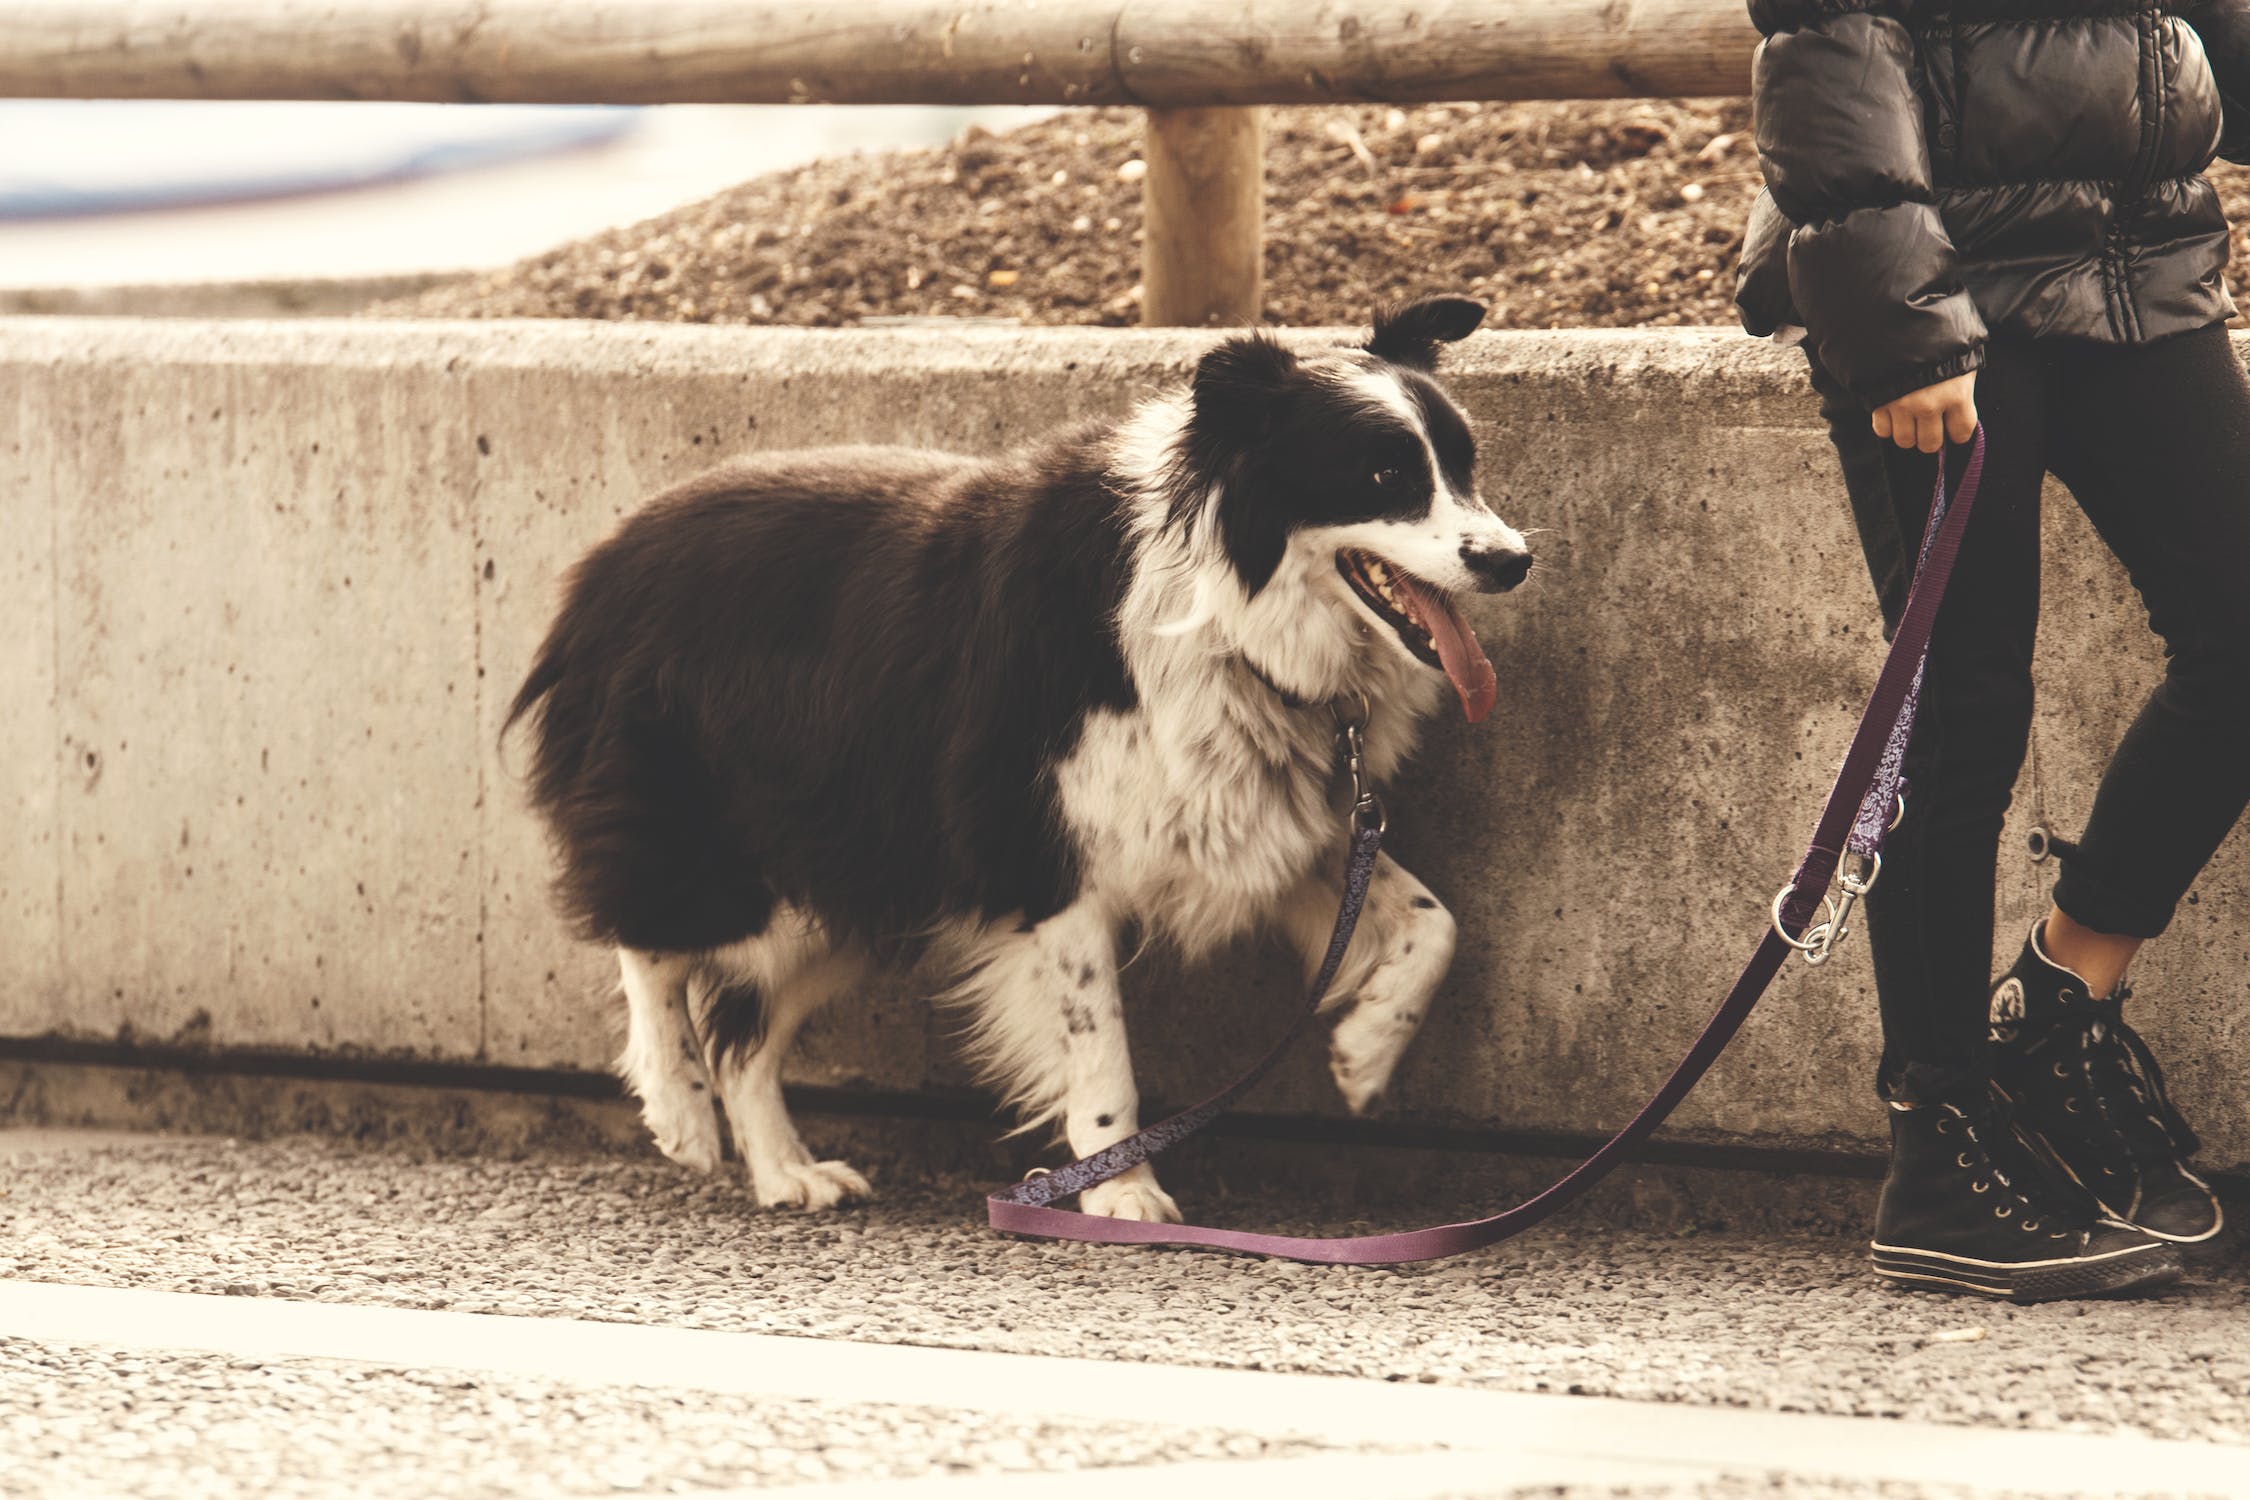 Mas, afinal, você sabe exatamente o que faz um passeador de cachorro? Fonte: Pexels.